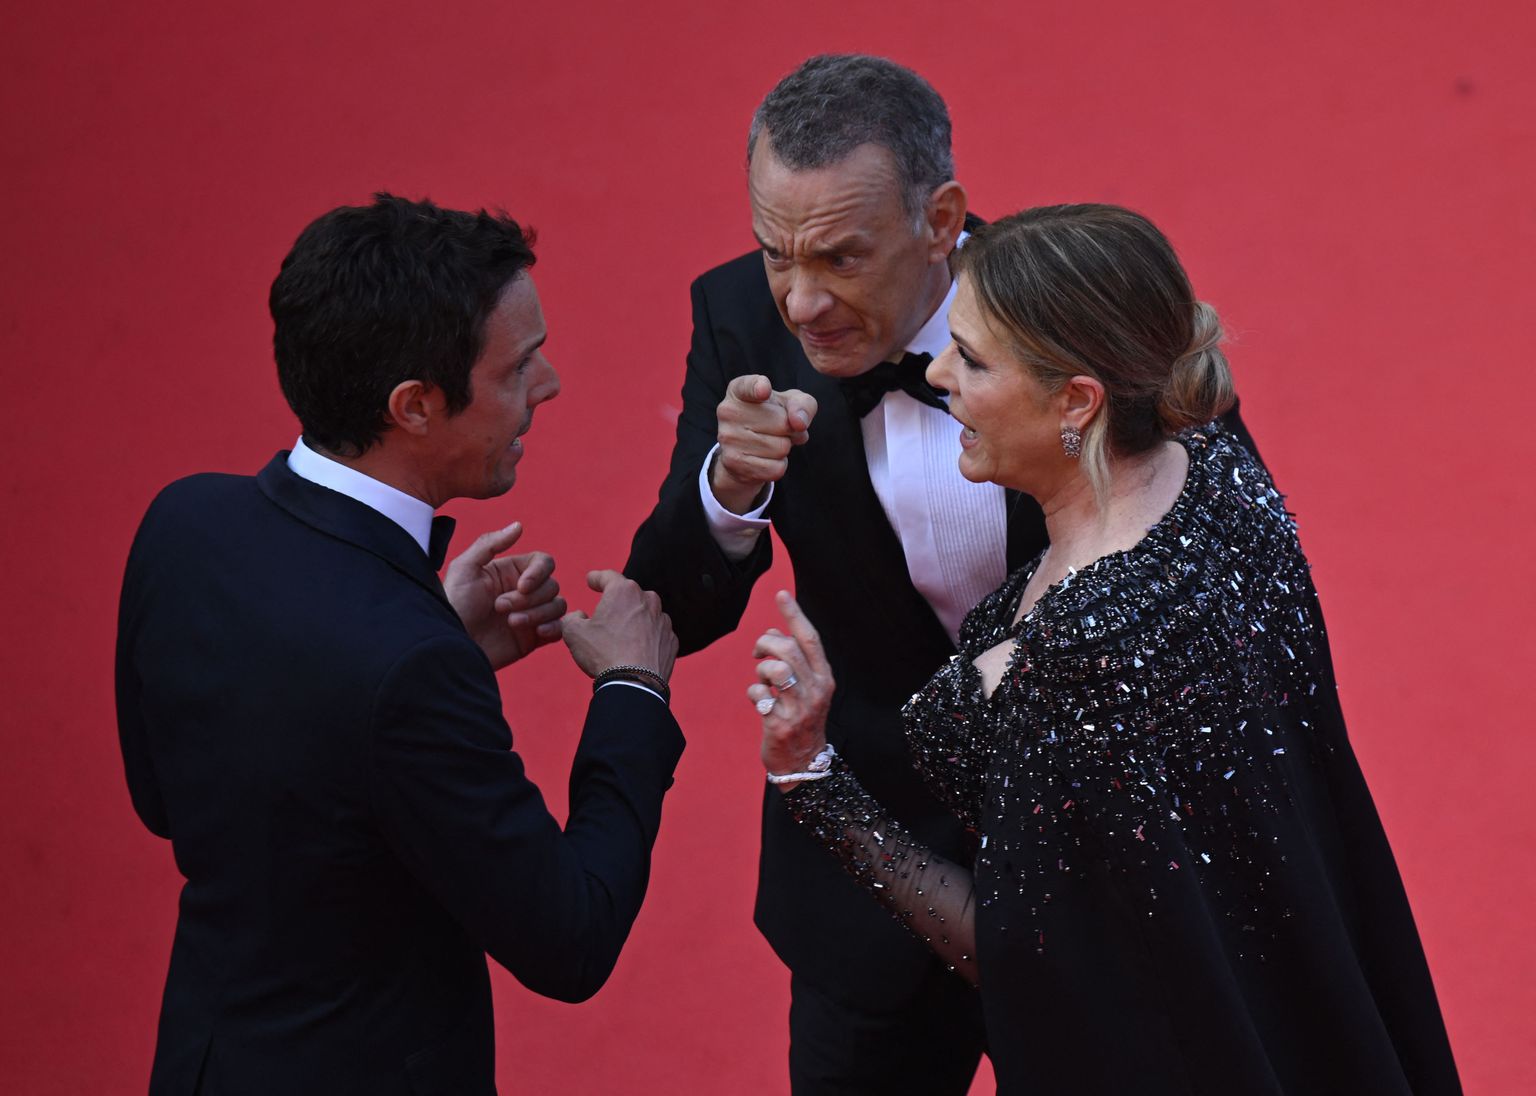 Näitleja Tom Hanks koos abikaasa Rita Wilsoniga Cannes'i filmifestivali punasel vaibal.